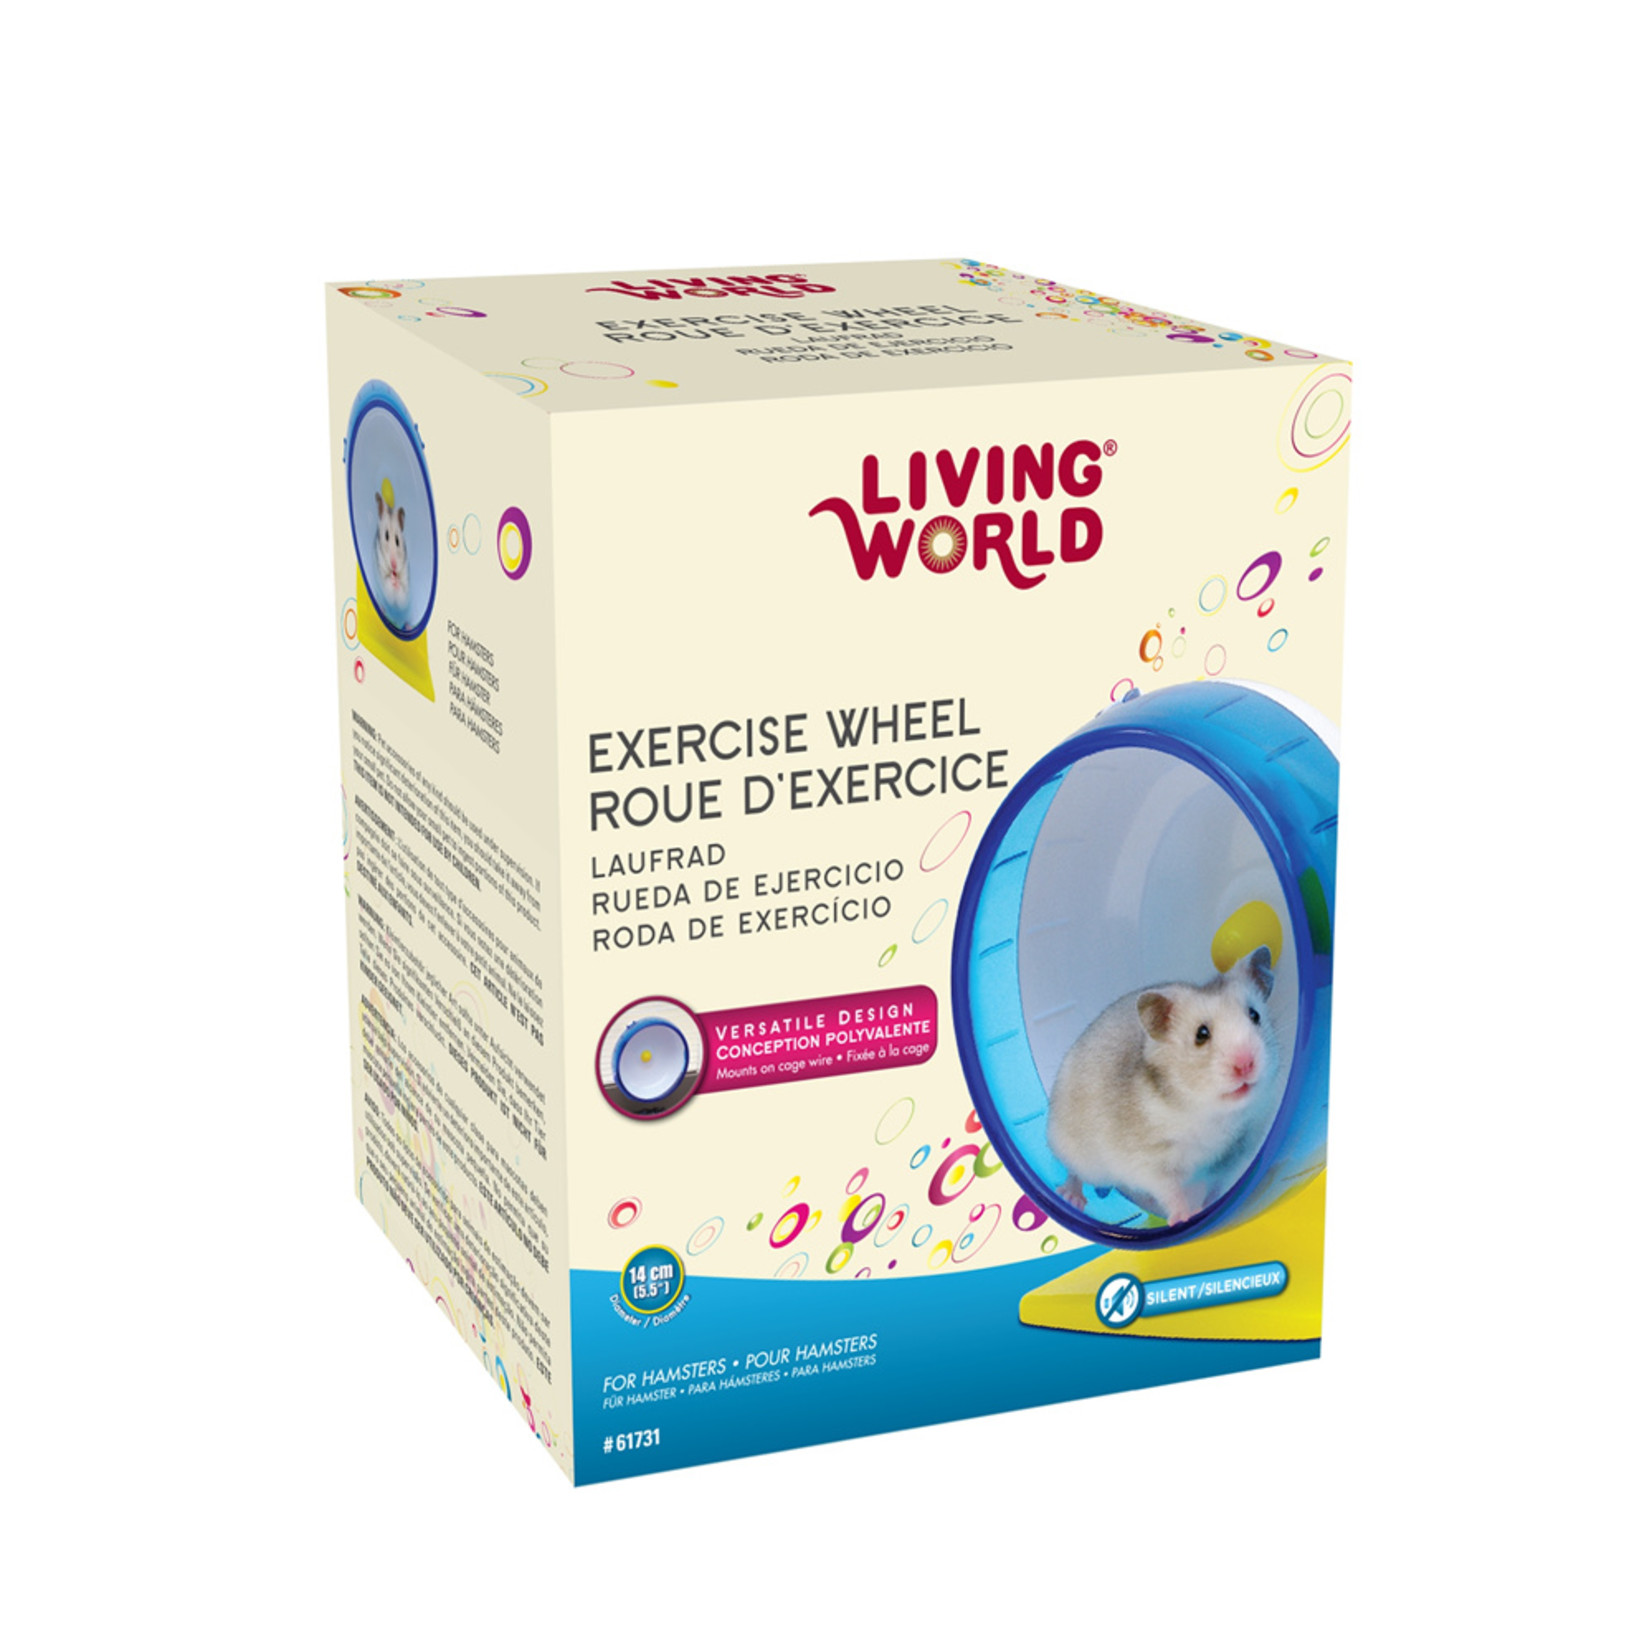 LIVING WORLD Living World Exercise Wheel for Hamsters - 14 cm (5.5")